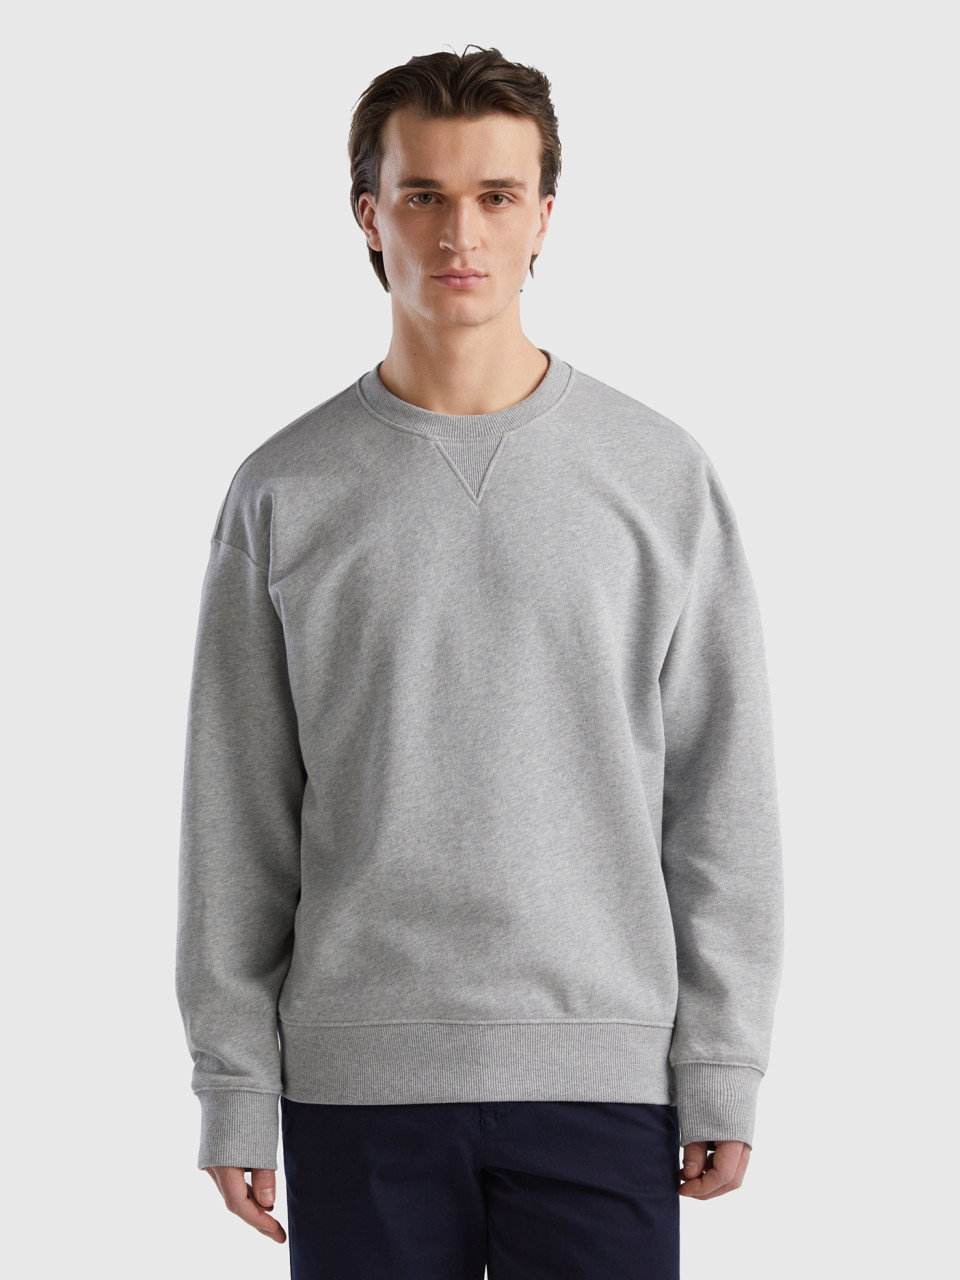 Benetton, 100% Cotton Pullover Sweatshirt, Light Gray, Men